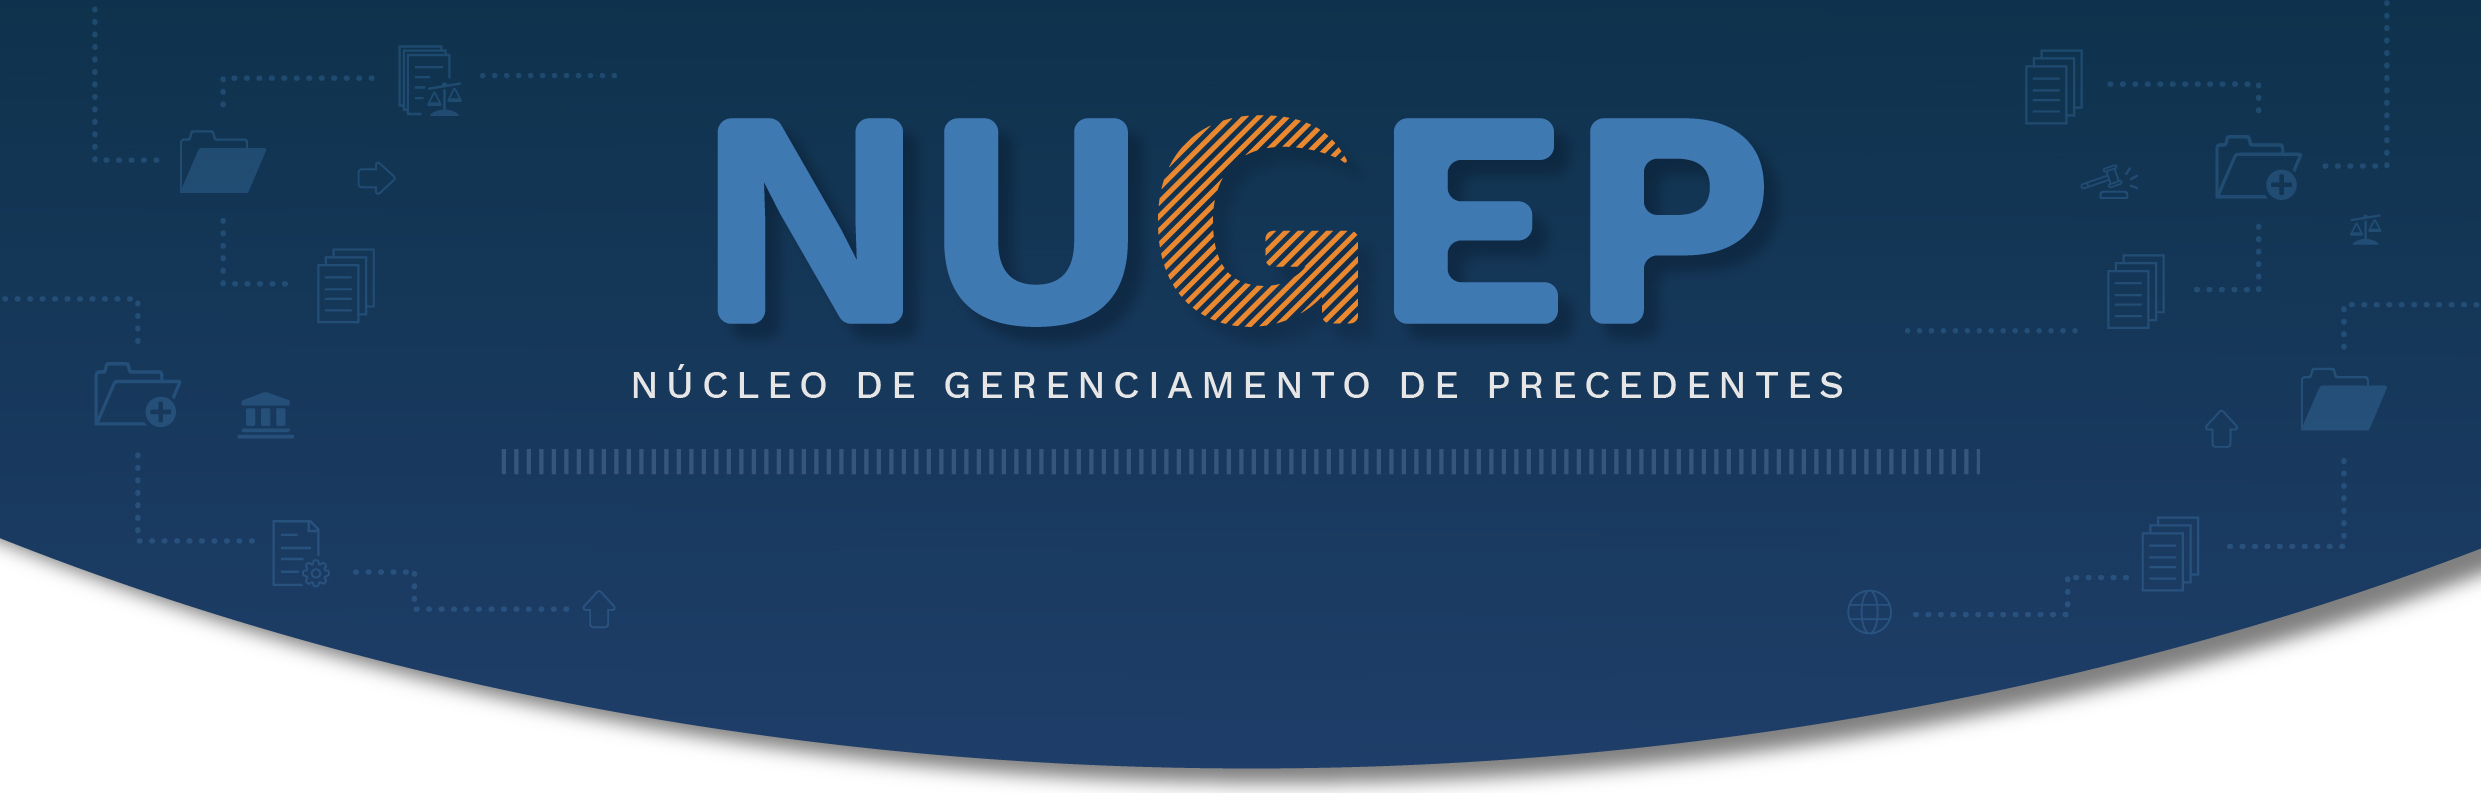 NUGEP - informativo - fundos - sem escrito_Cabecalho.jpg